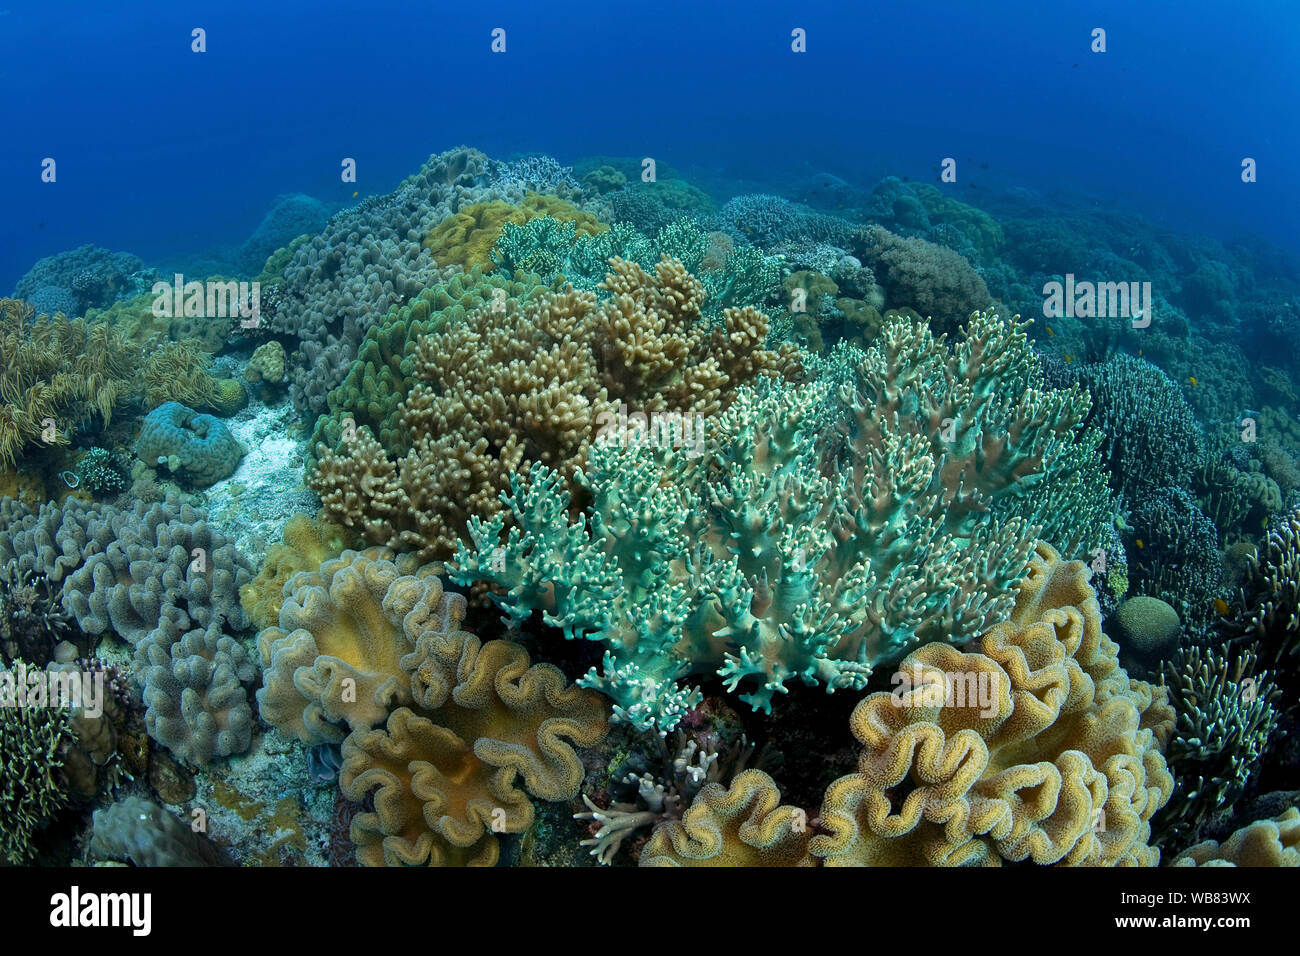 Arrecifes de coral con corales cuero dominante de la familia (Alcyoniidae), Apo- arrecife, Dumaguete, Negros, Visayas, Filipinas Foto de stock